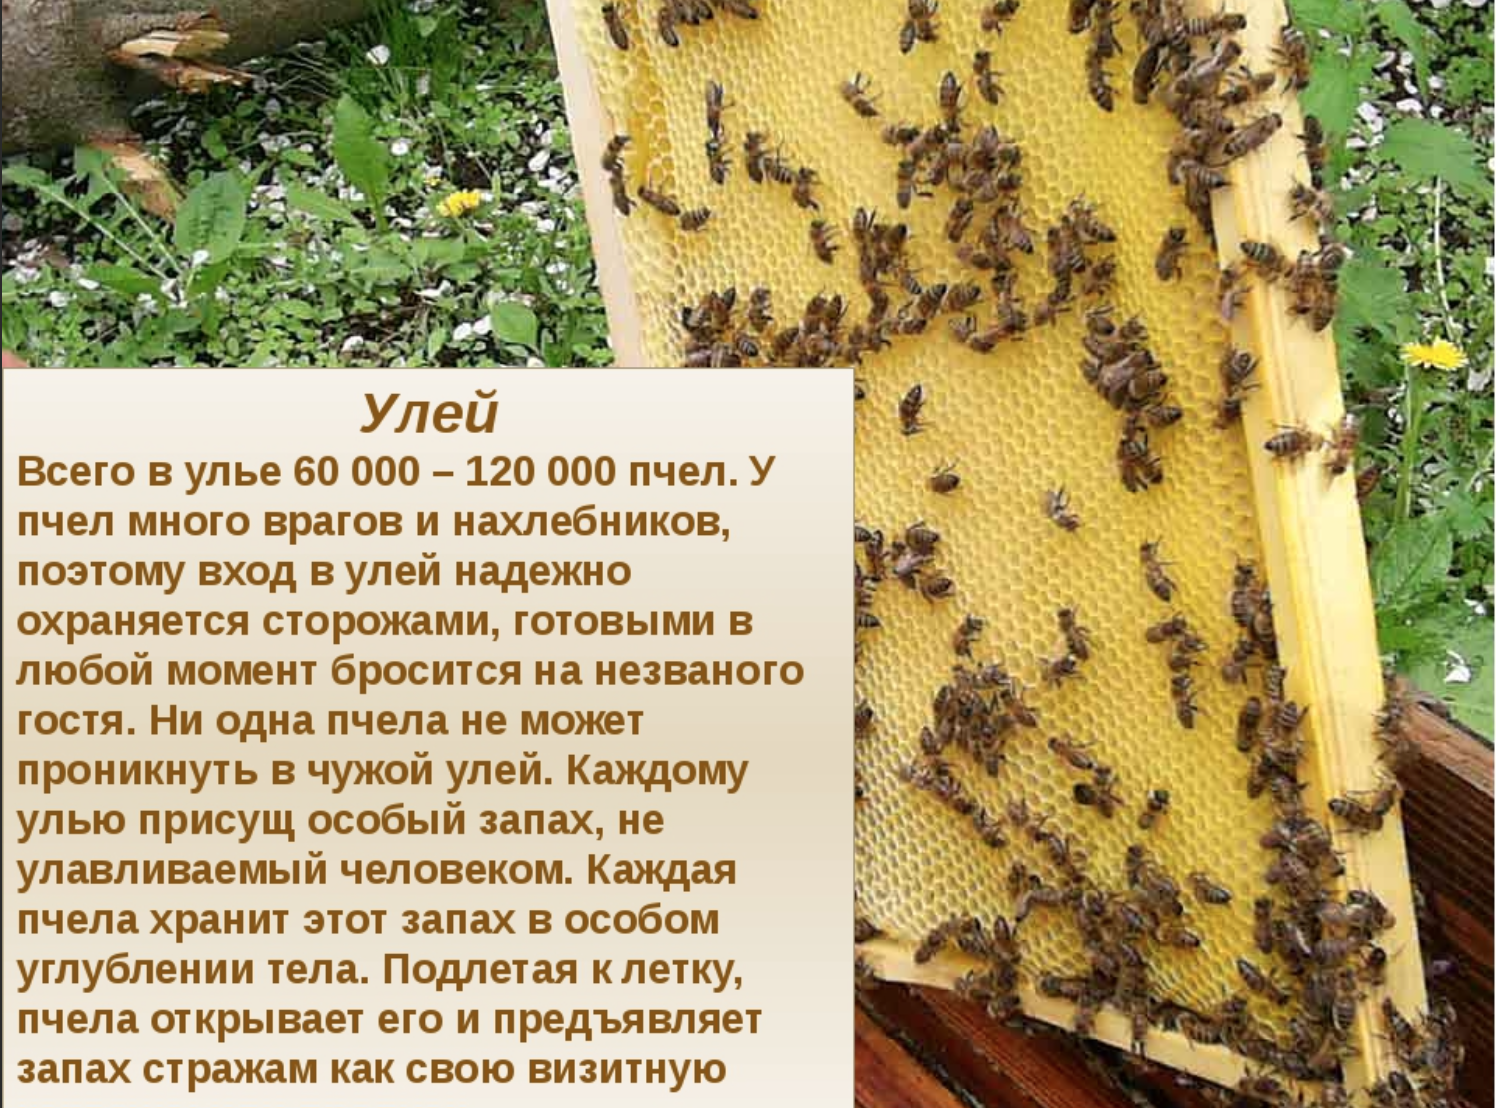 Kolik včel je v úlu 